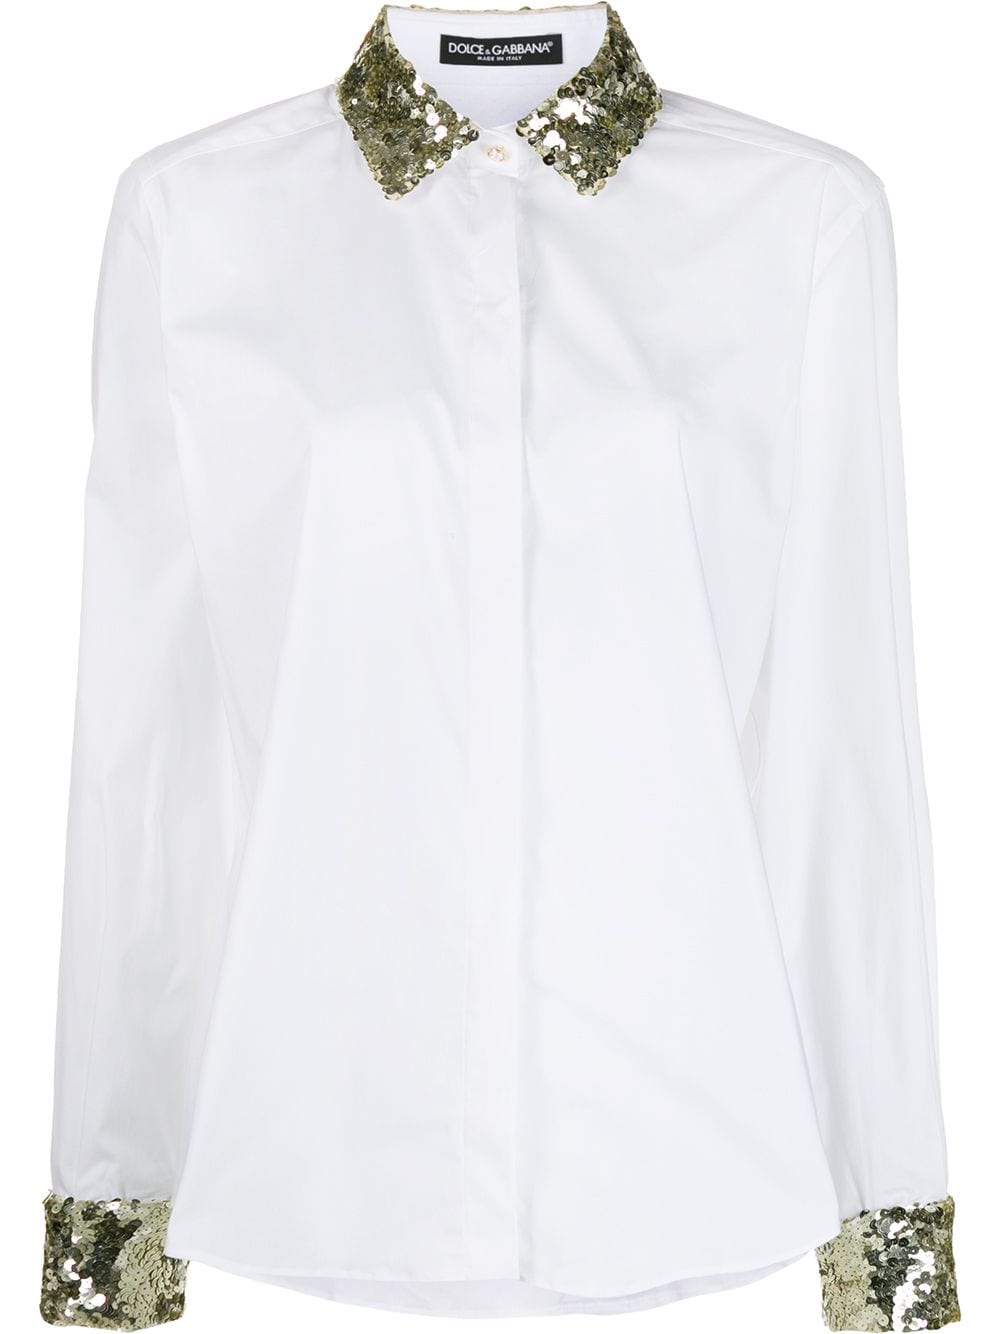 фото Dolce & Gabbana поплиновая рубашка с пайетками